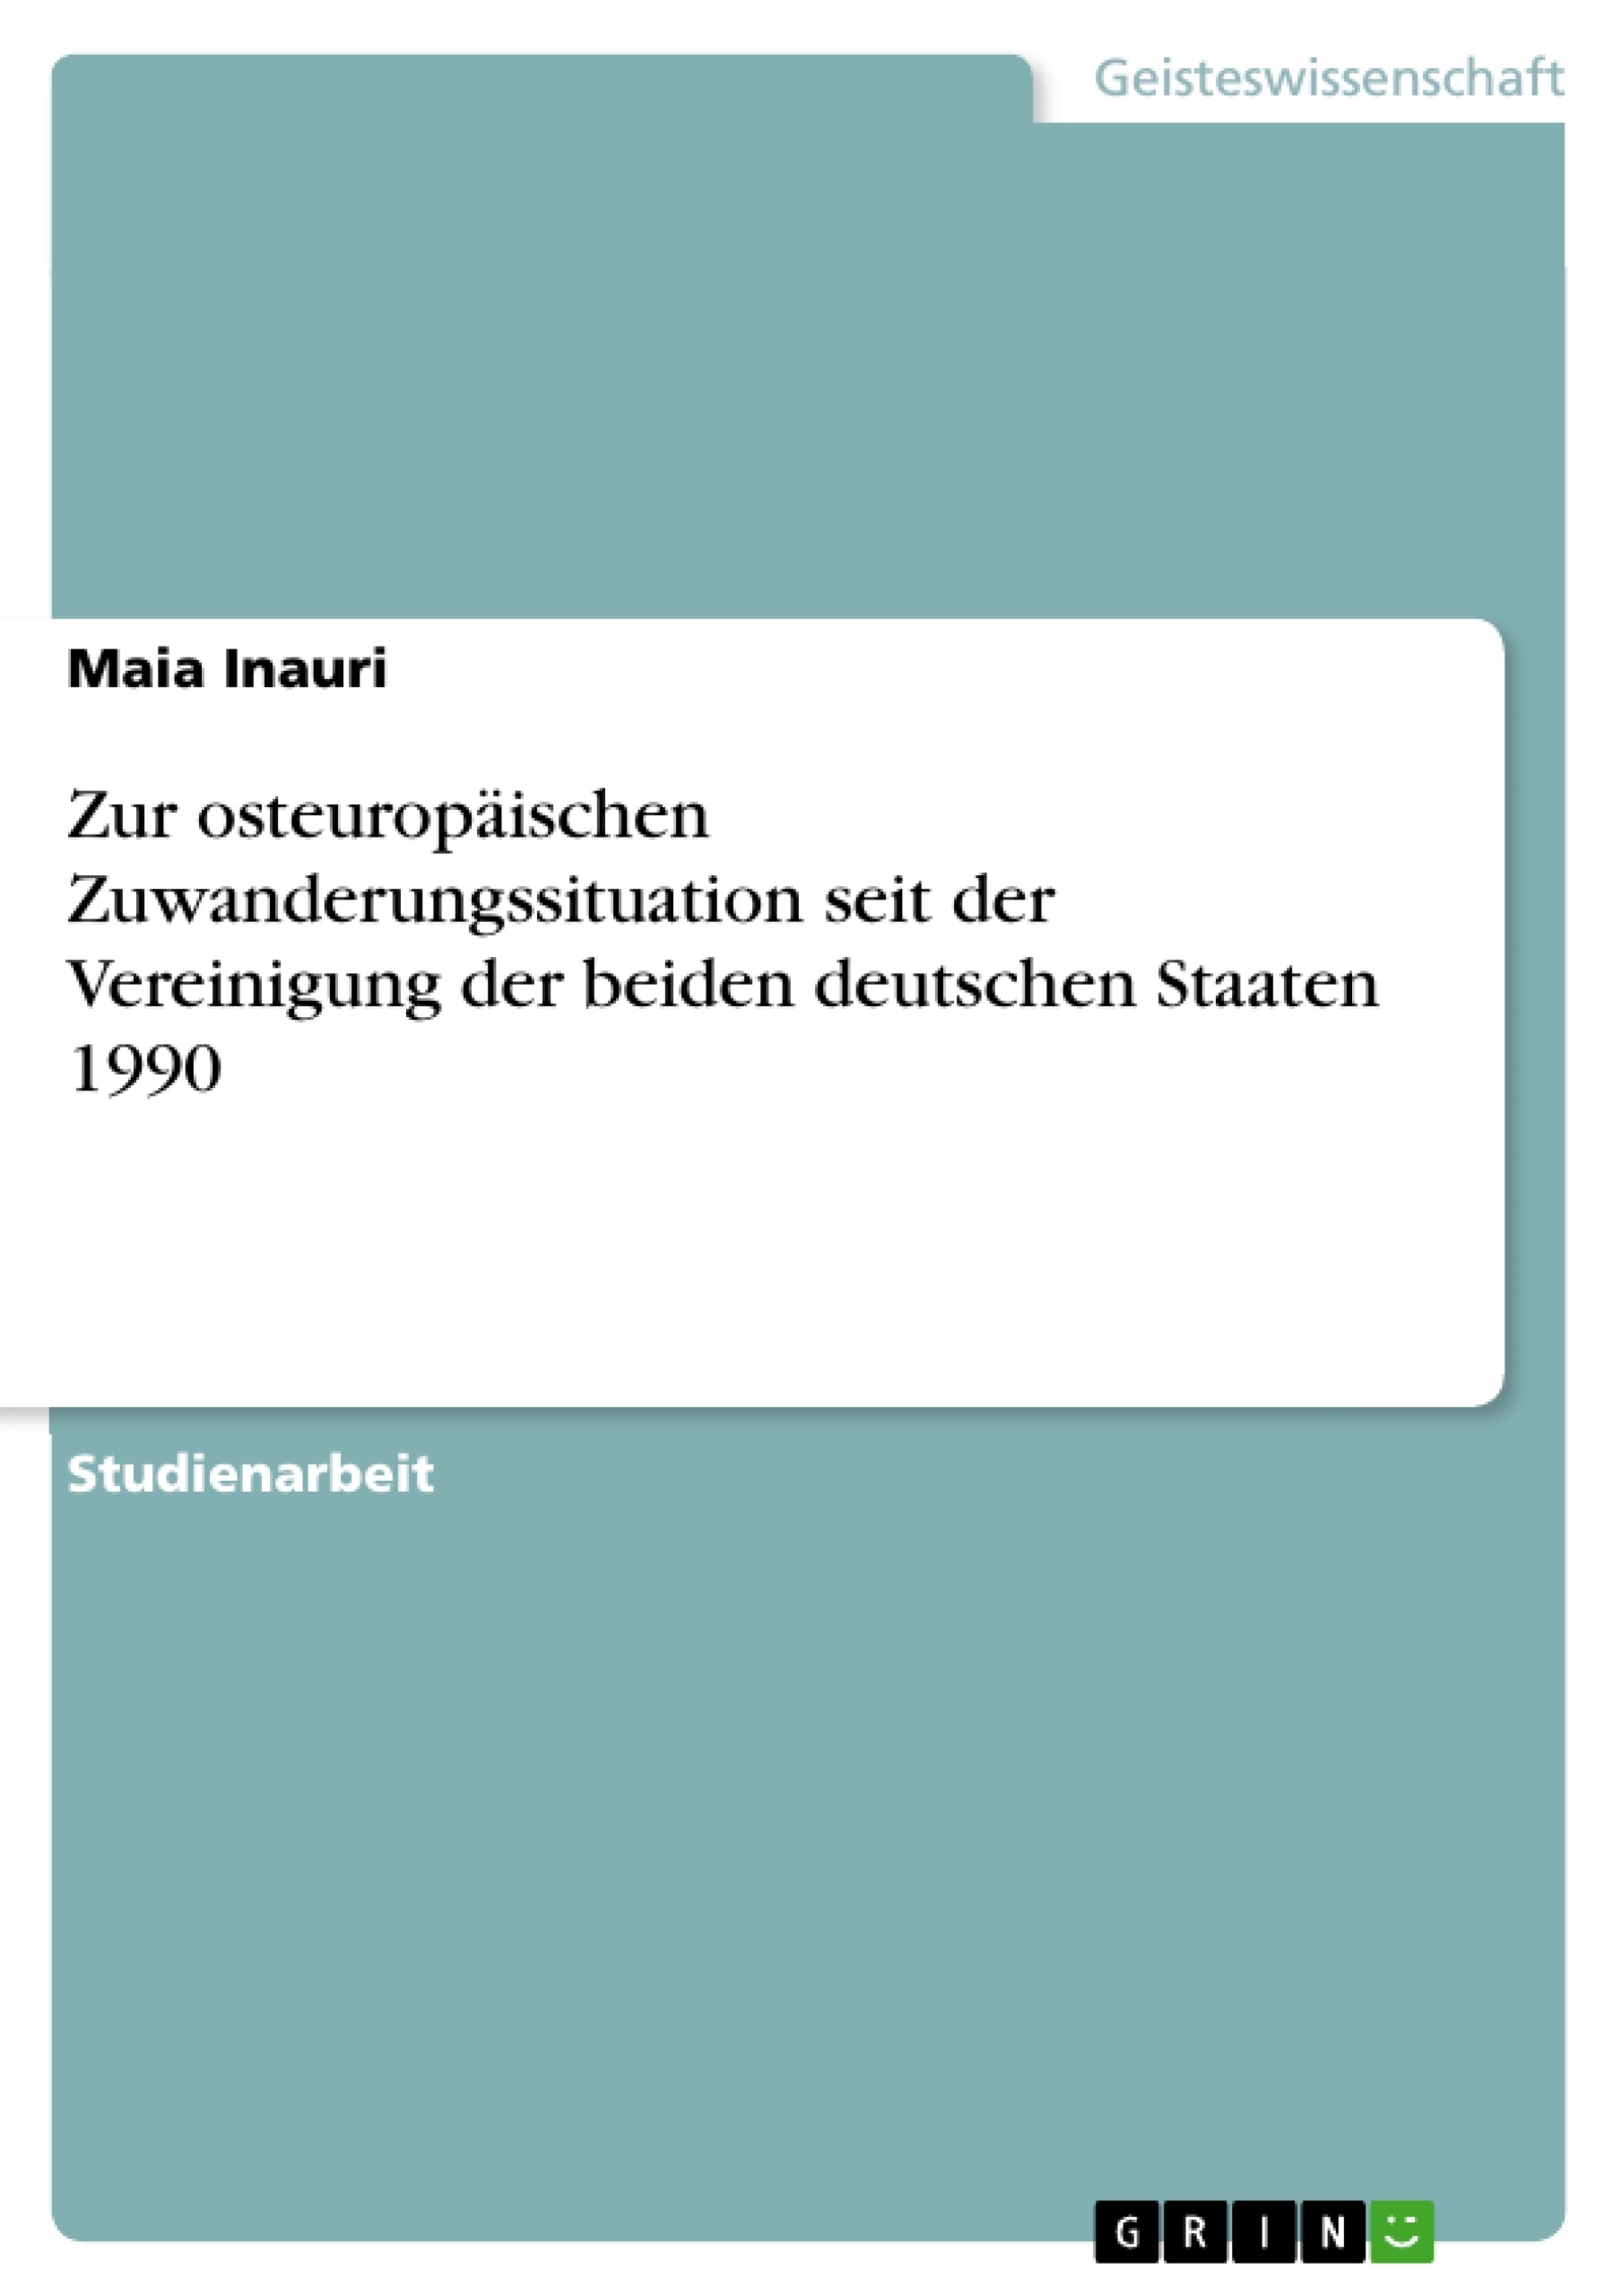 Title: Zur osteuropäischen Zuwanderungssituation seit der Vereinigung der beiden deutschen Staaten 1990